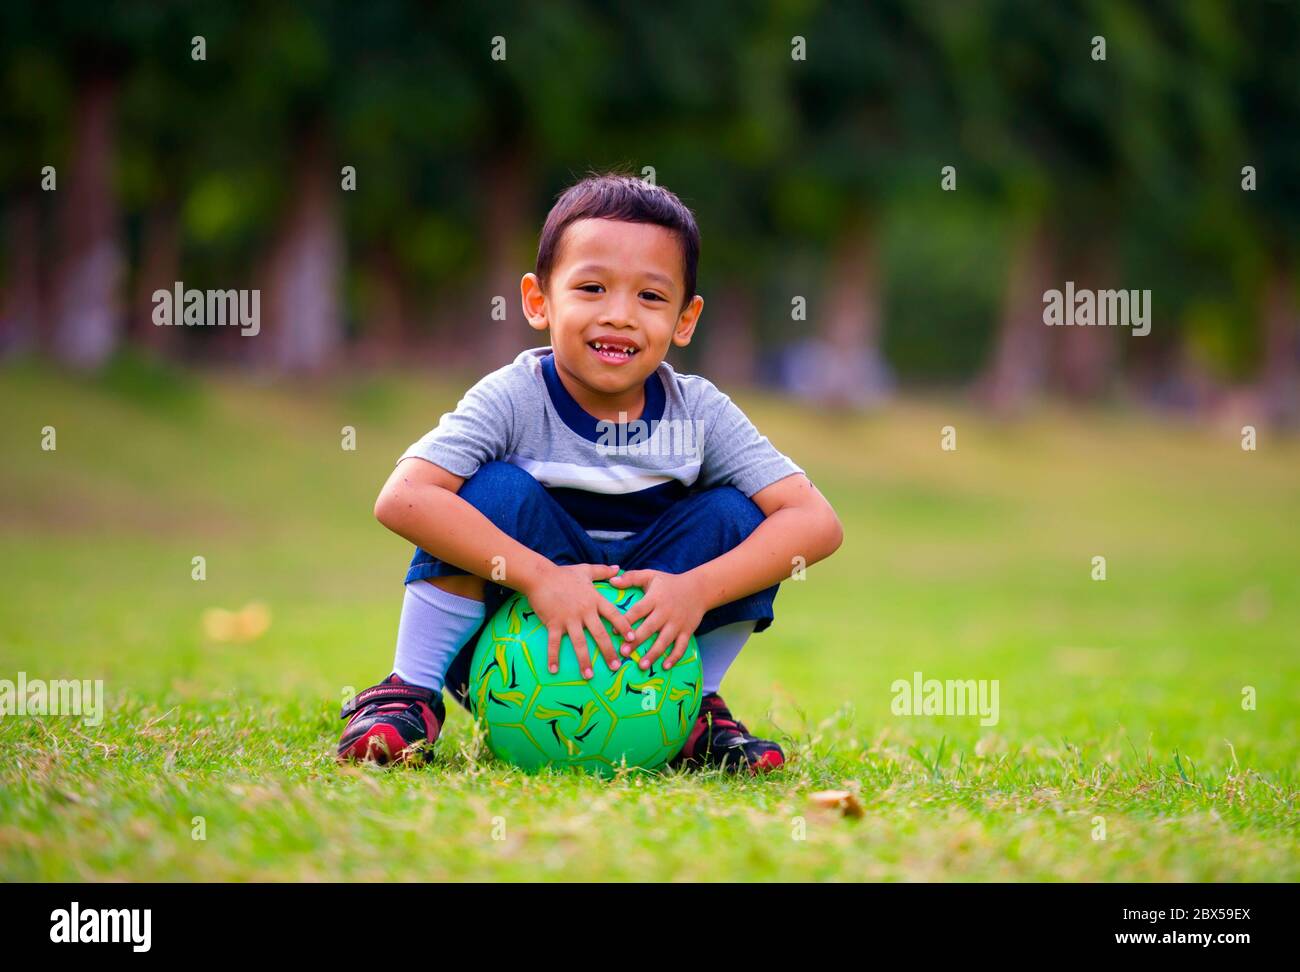 Aficionado al fútbol infantil fotografías e imágenes de alta resolución -  Página 7 - Alamy